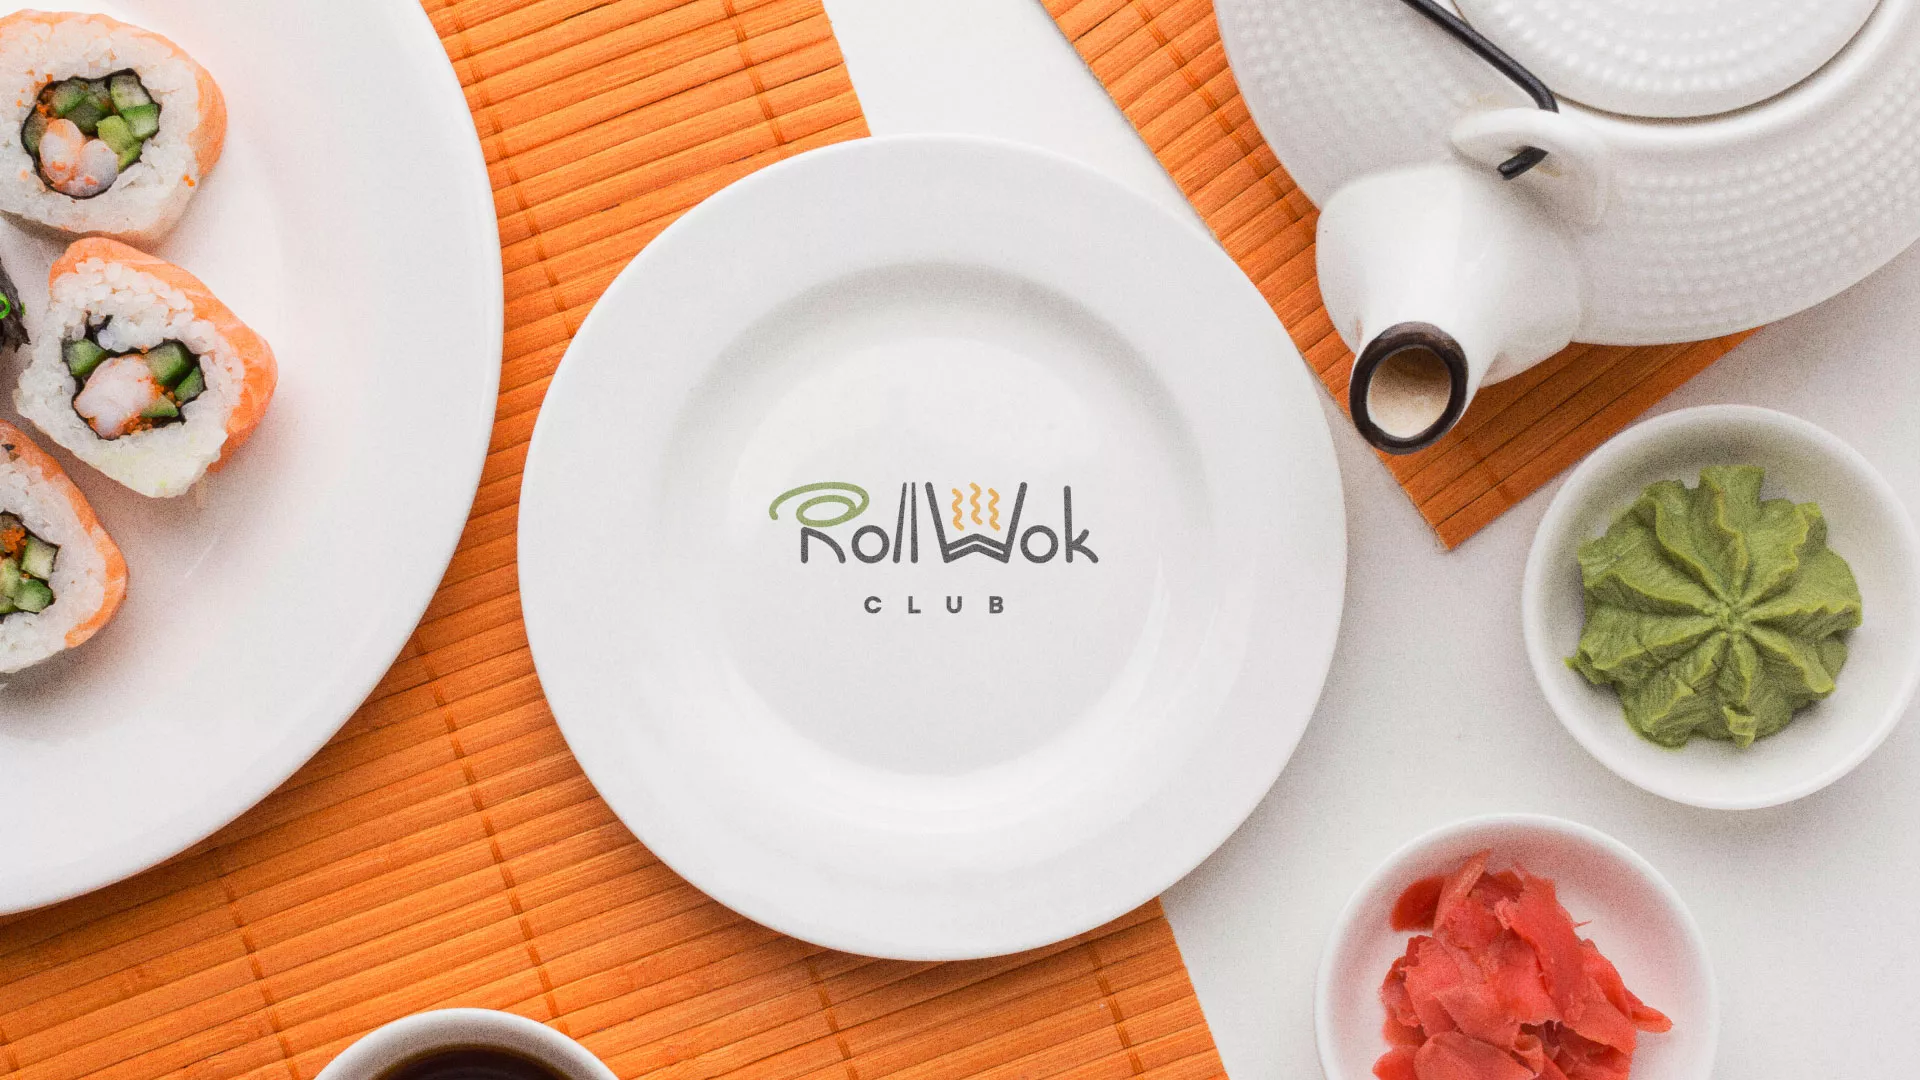 Разработка логотипа и фирменного стиля суши-бара «Roll Wok Club» в Рузаевке